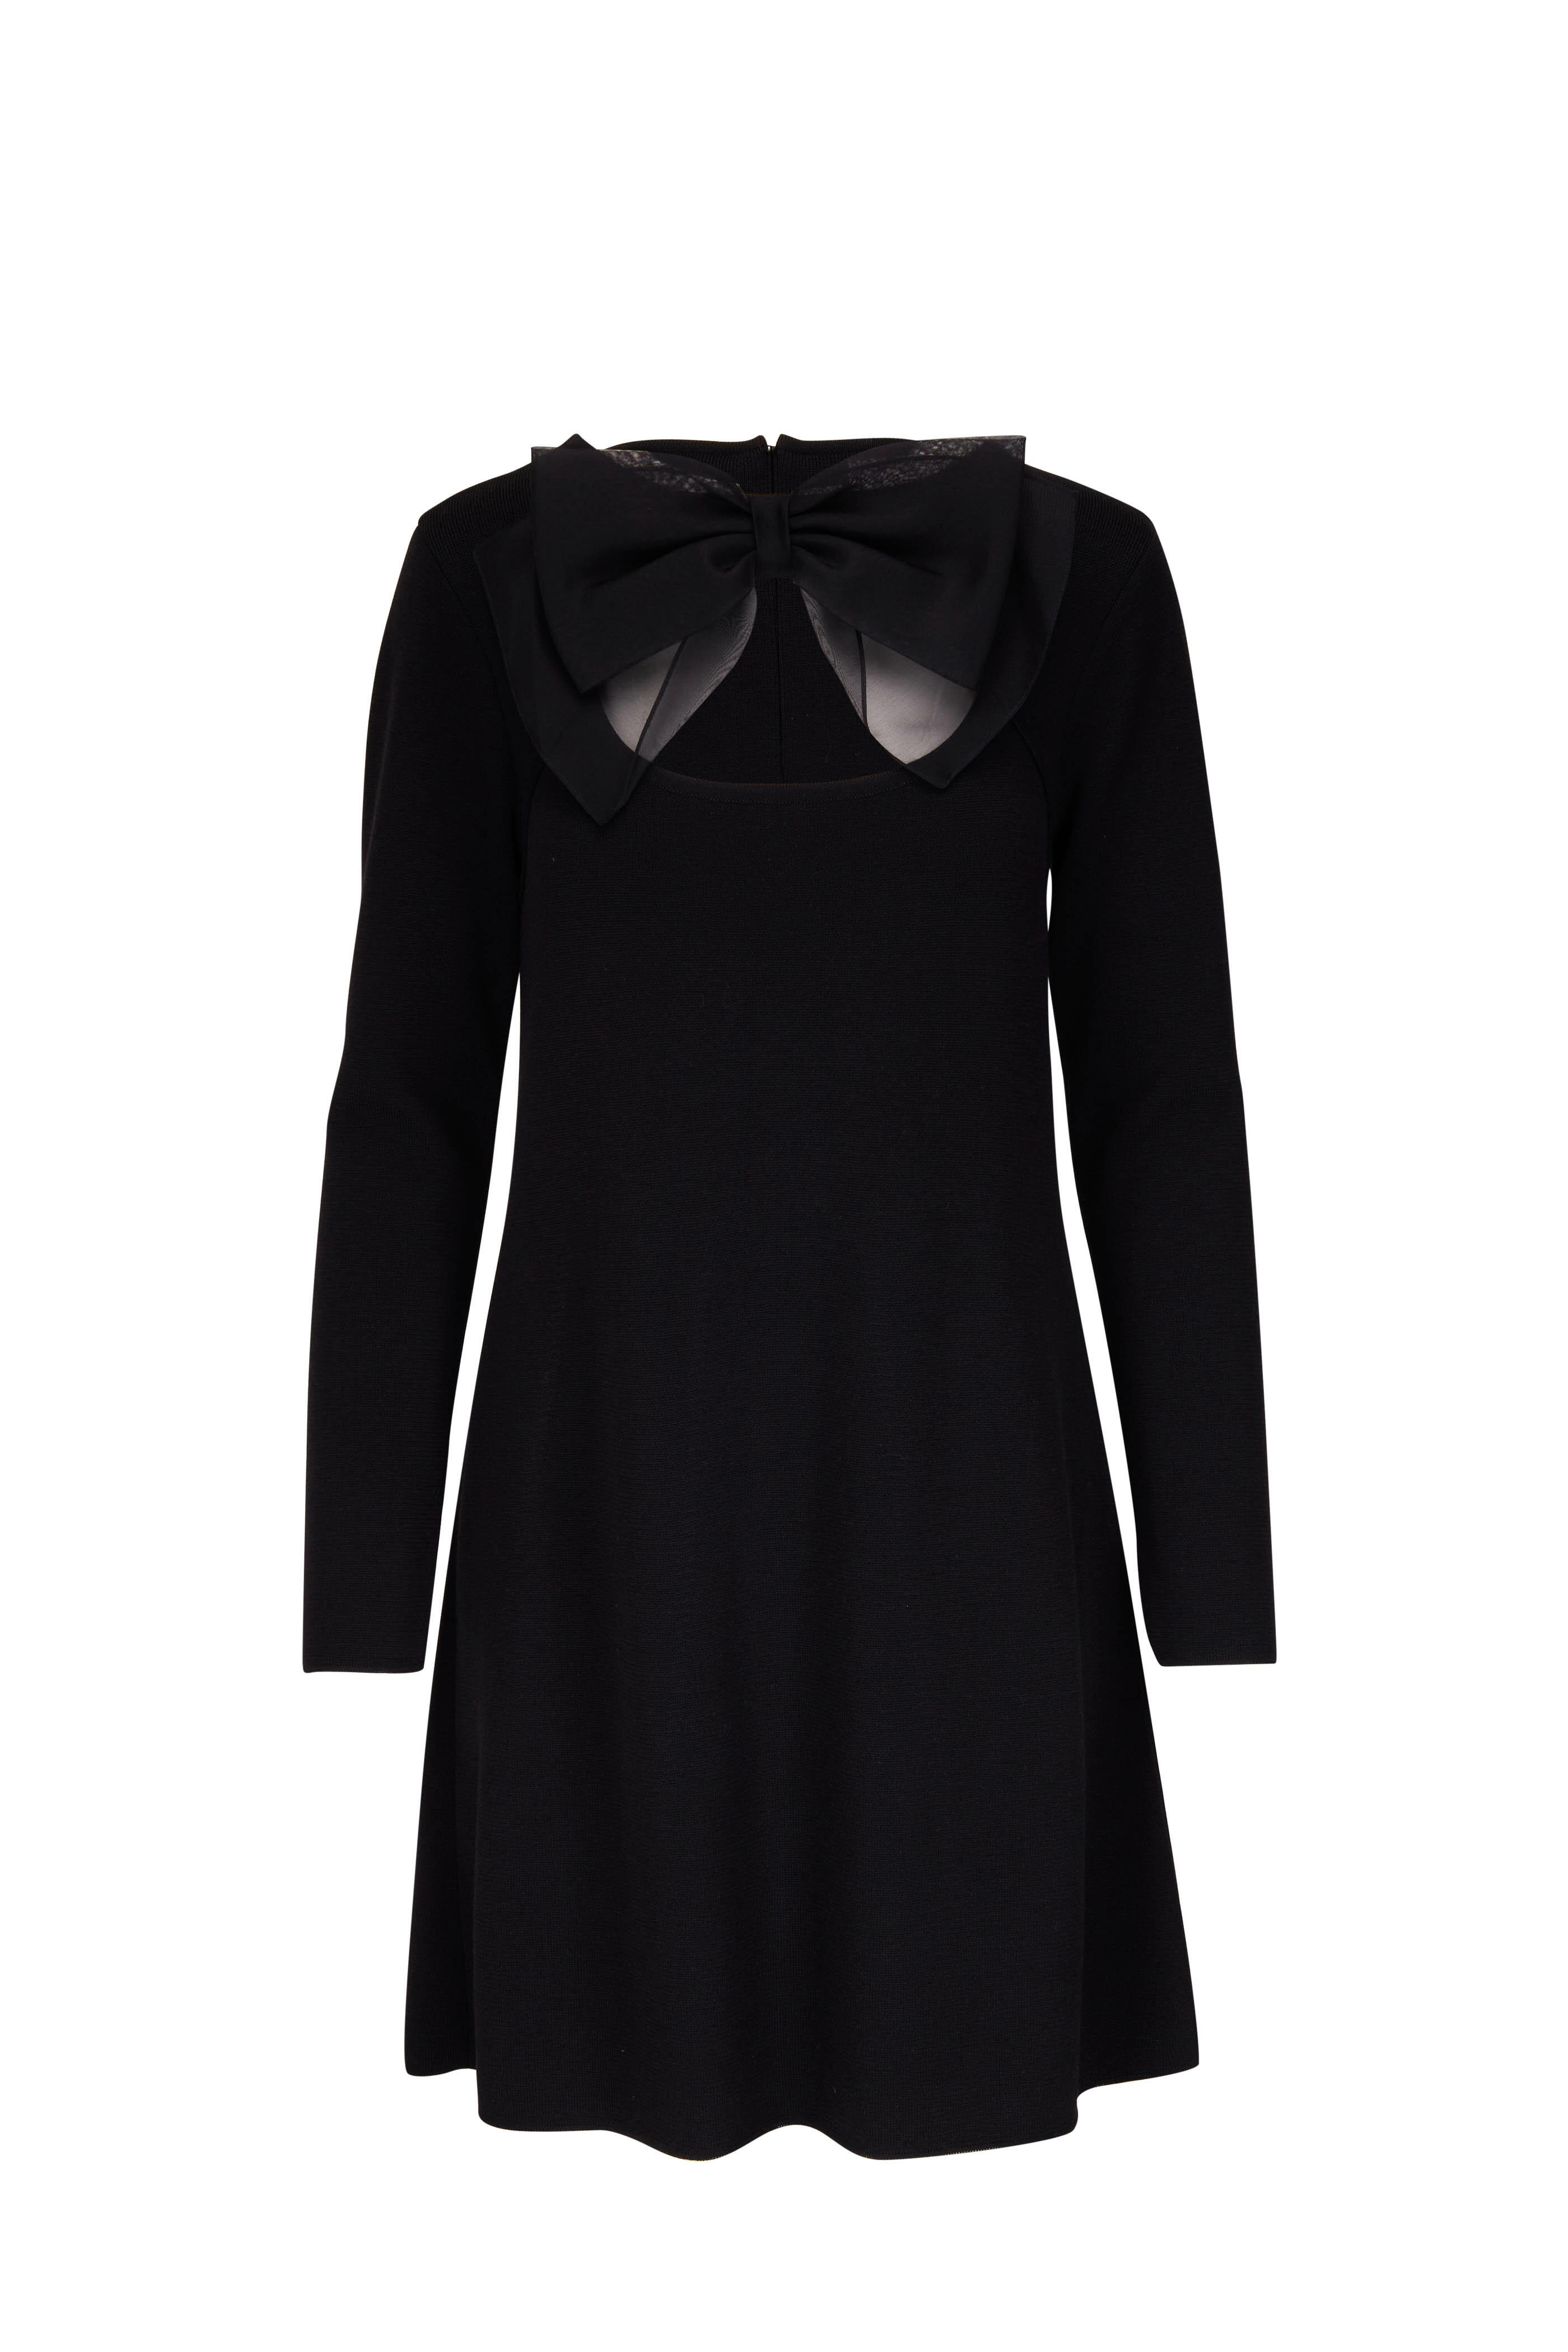 Carolina Herrera - Black Long Sleeve Bow Dress | Mitchell Stores